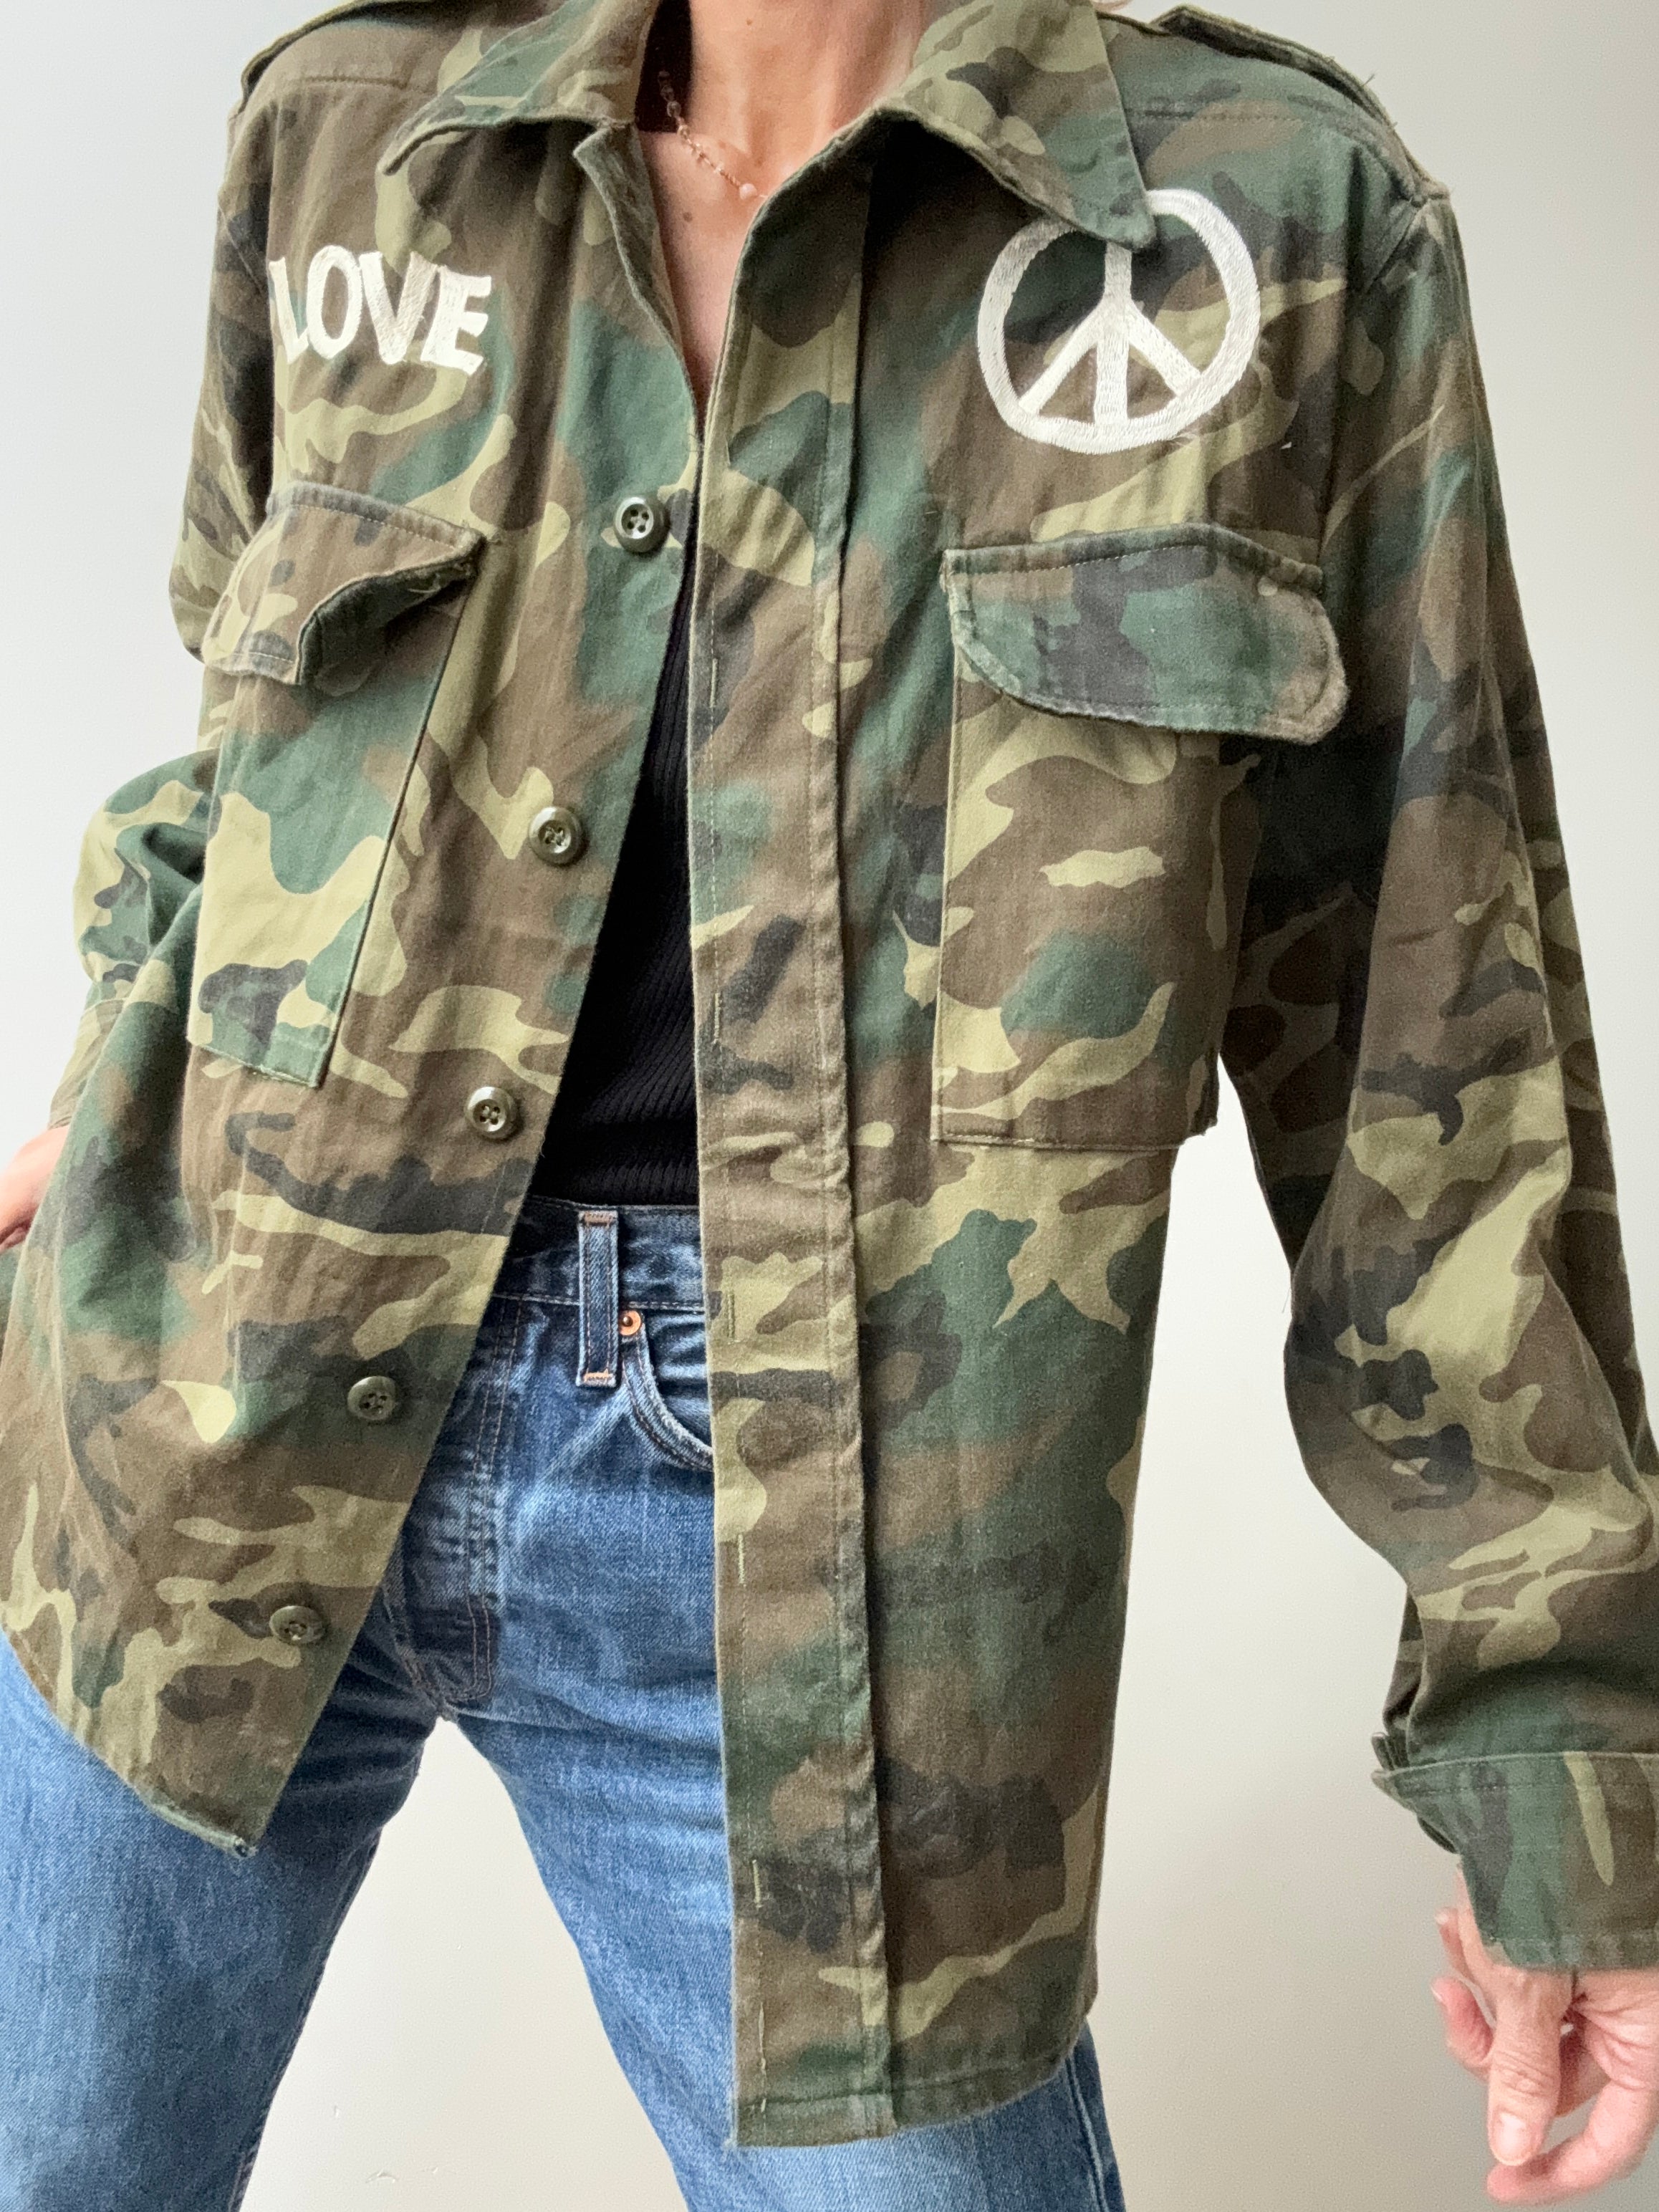 Future Nomads Jackets Small-Medium Peace Love Camo Army Shirt SS246